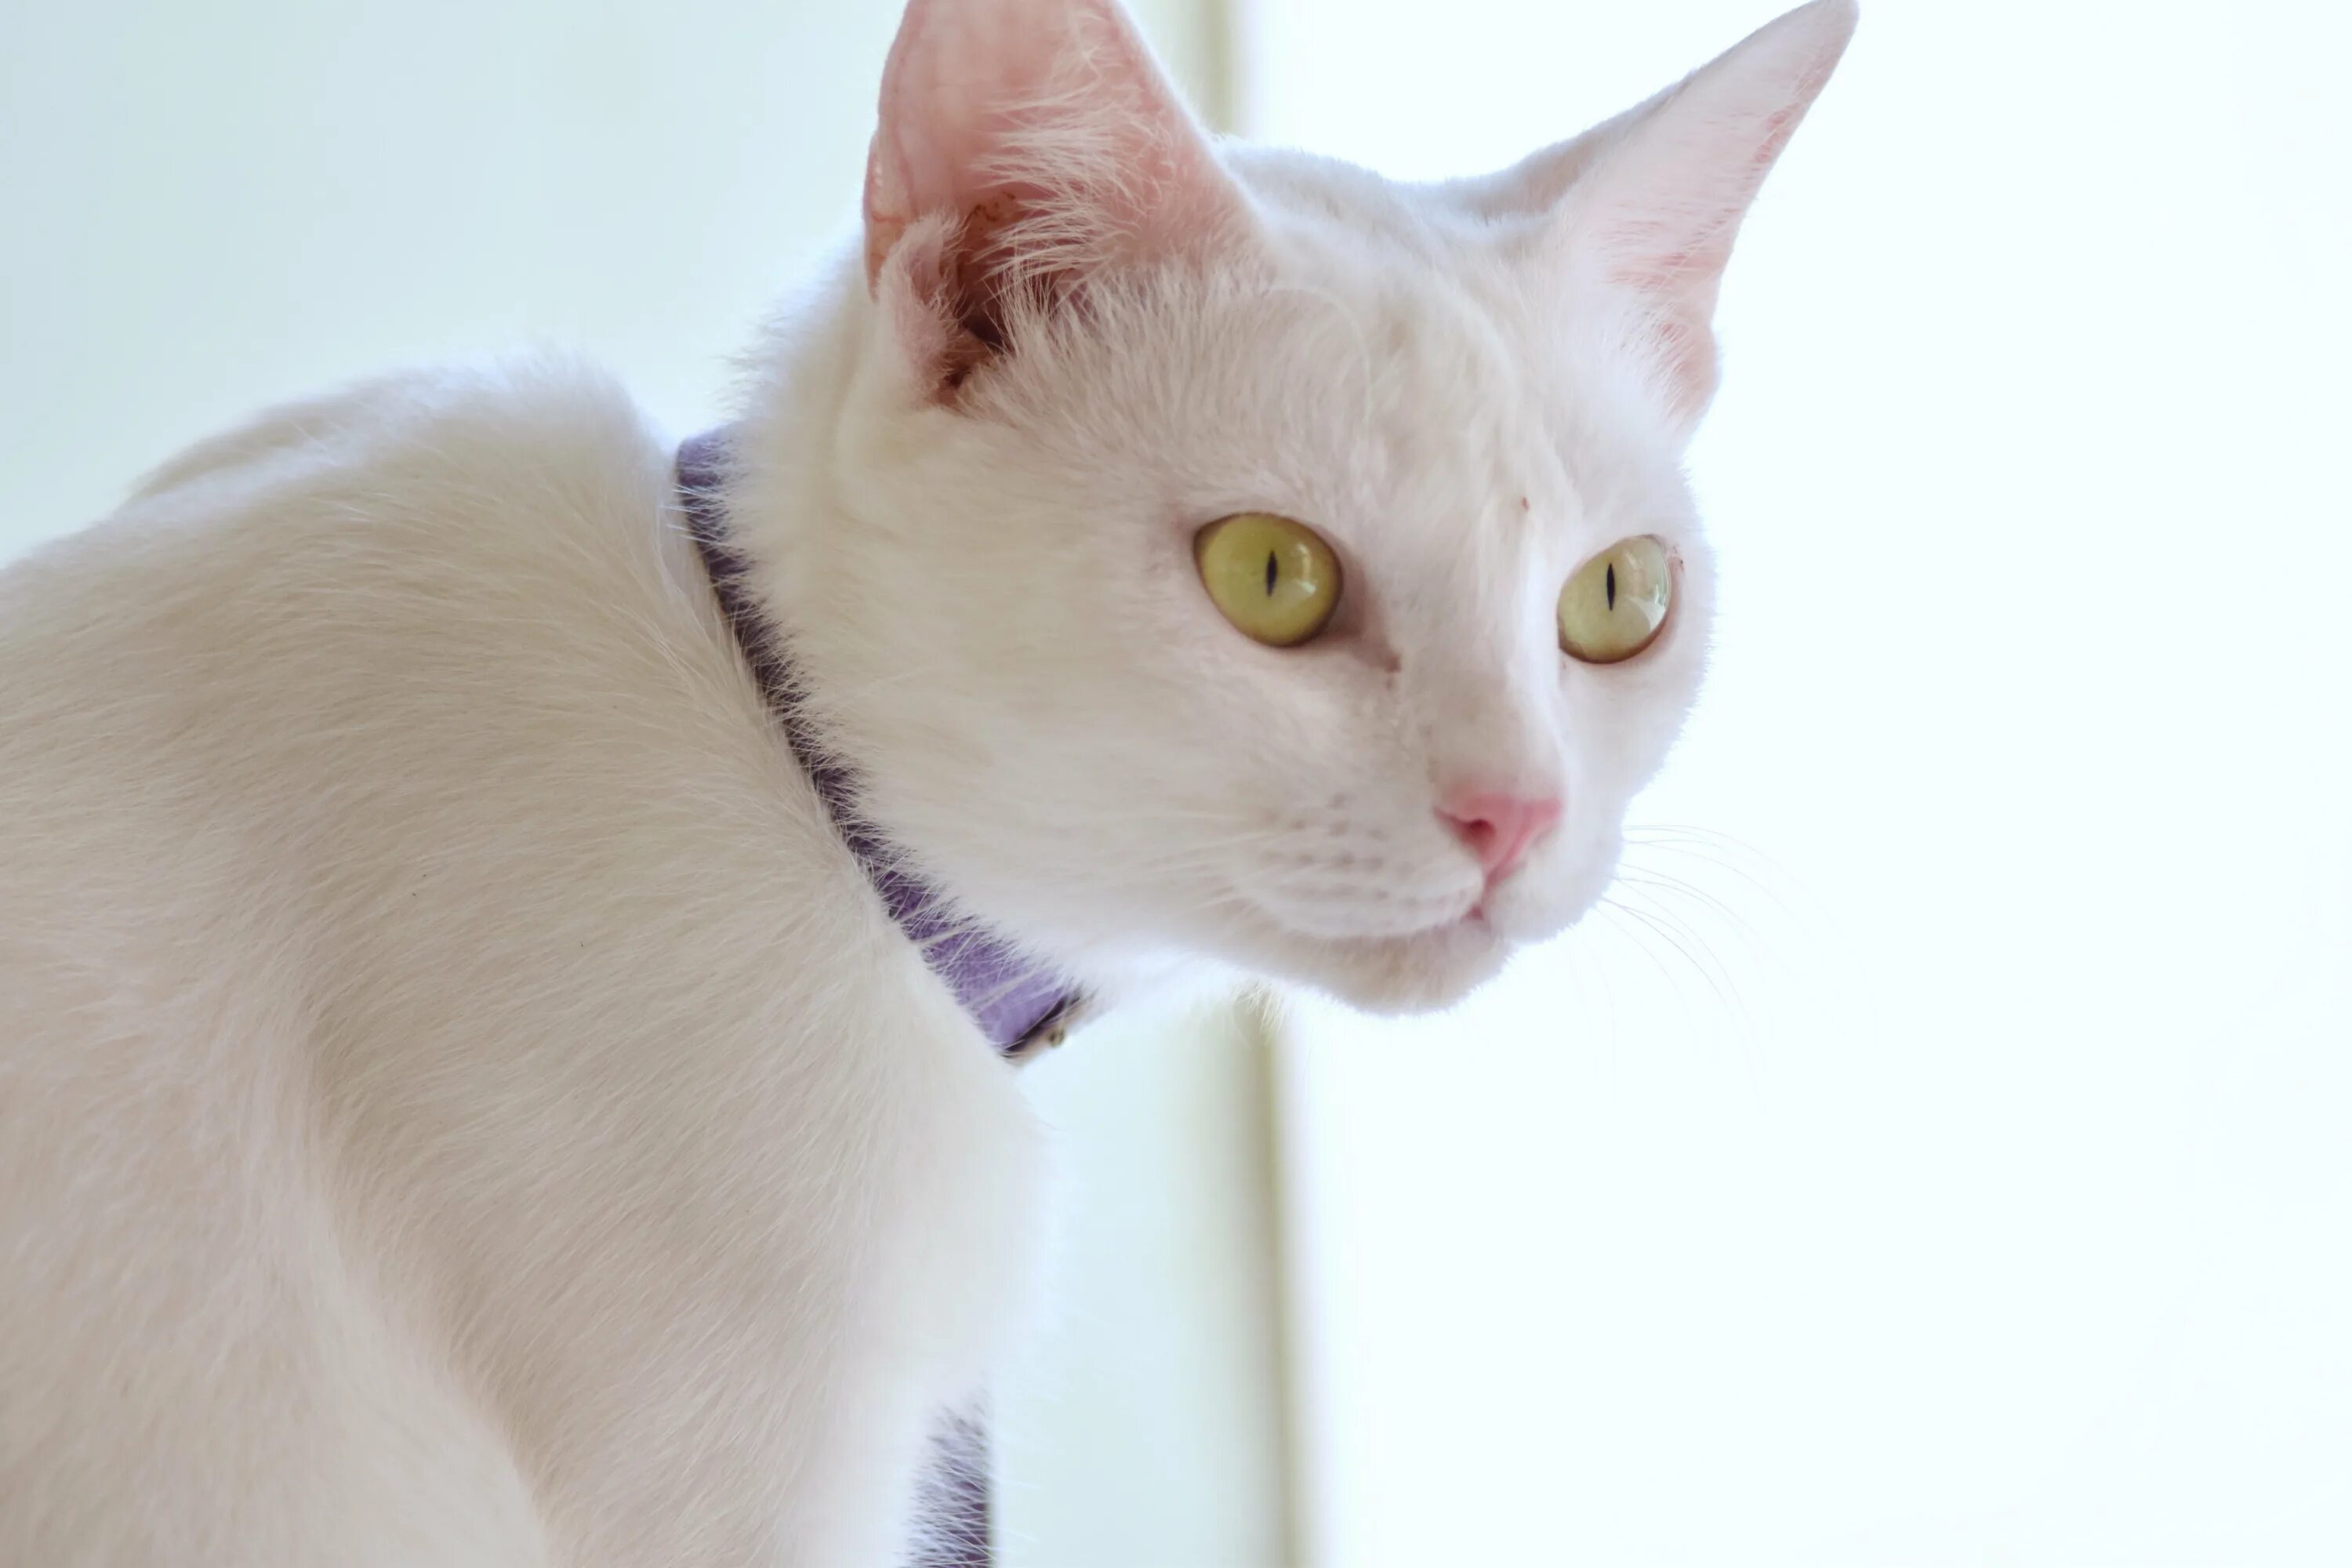 Европейская короткошерстная кошка белая. Турецкая ангора короткошерстная. Американская короткошёрстная кошка белая. Европейская гладкошерстная кошка белая.